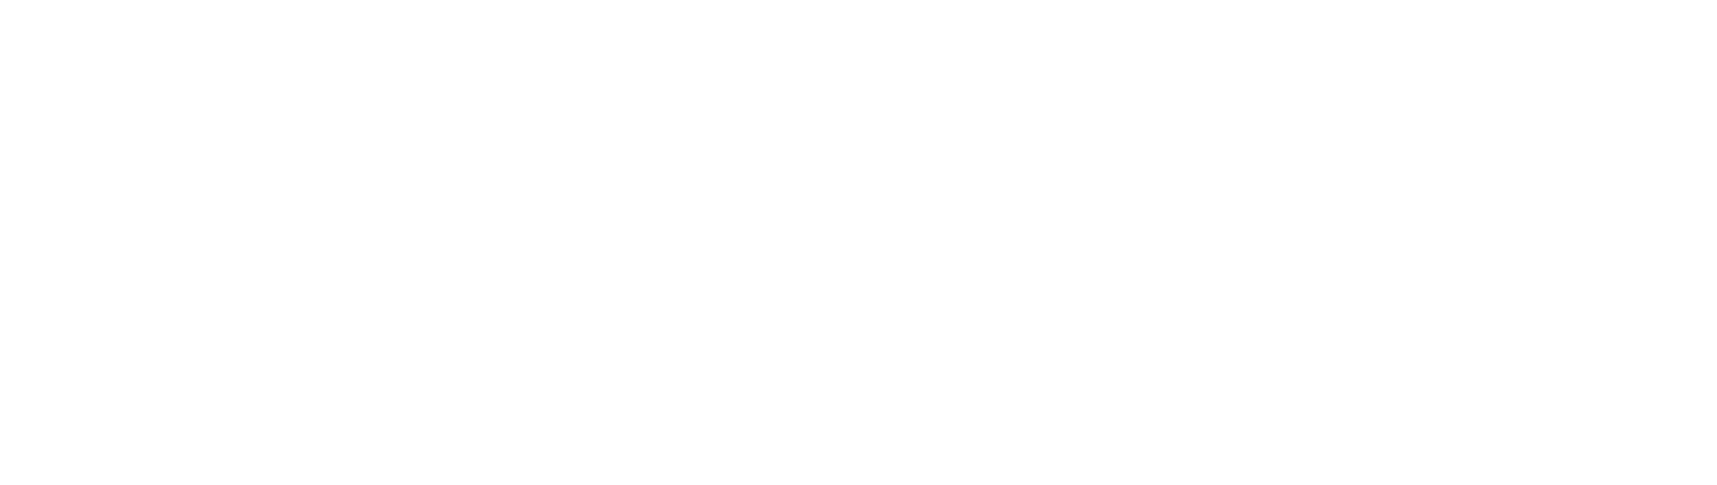 SONNYS Marketing by Slam logo in white